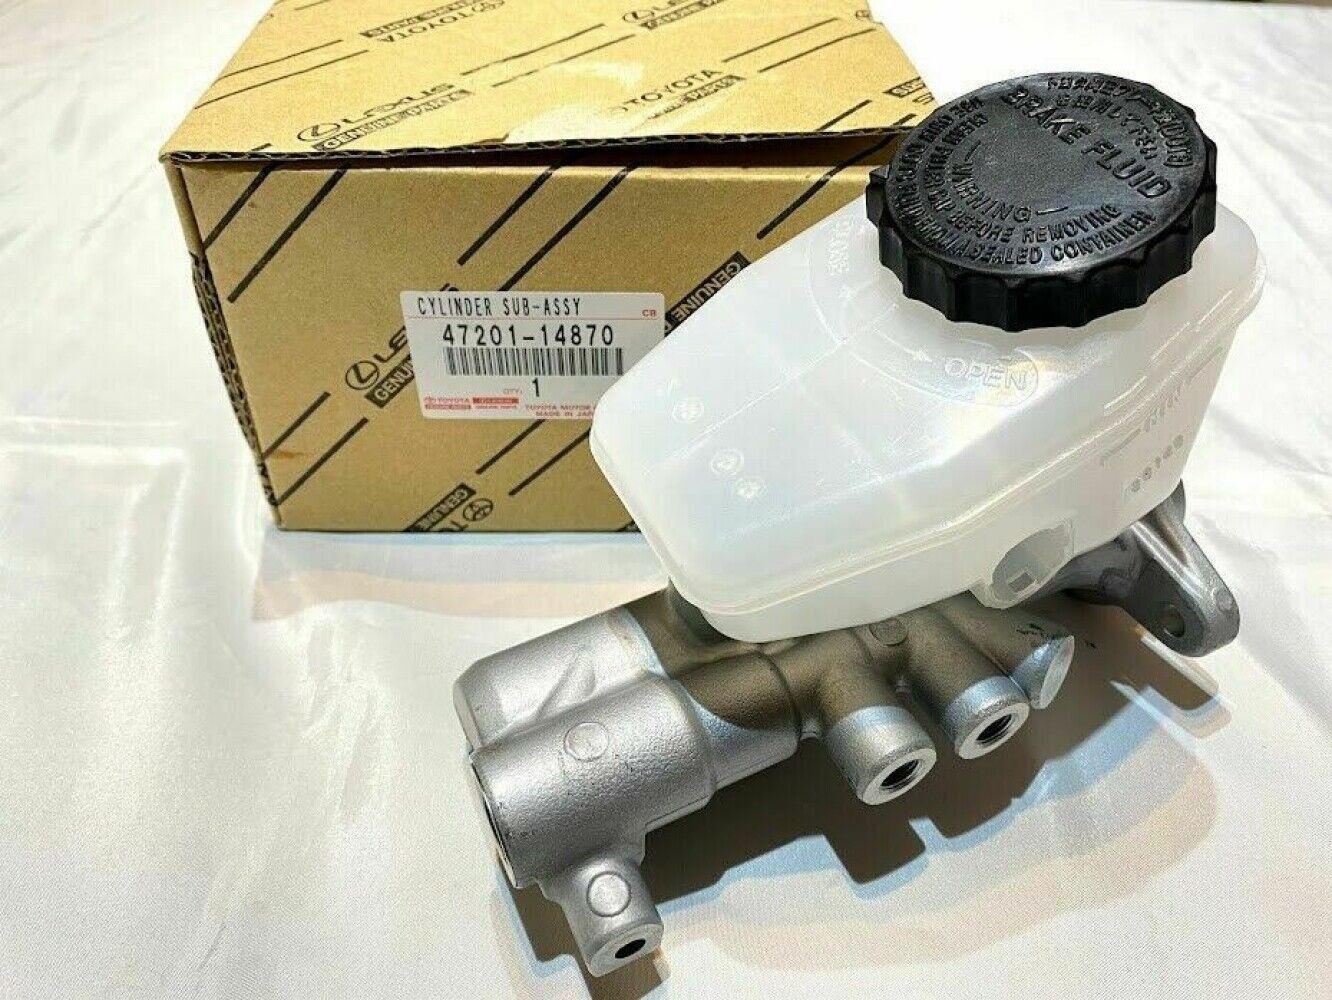 TOYOTA 正品 SUPRA Wheels Brake Master Cylinder Gasket Set 47201-14870